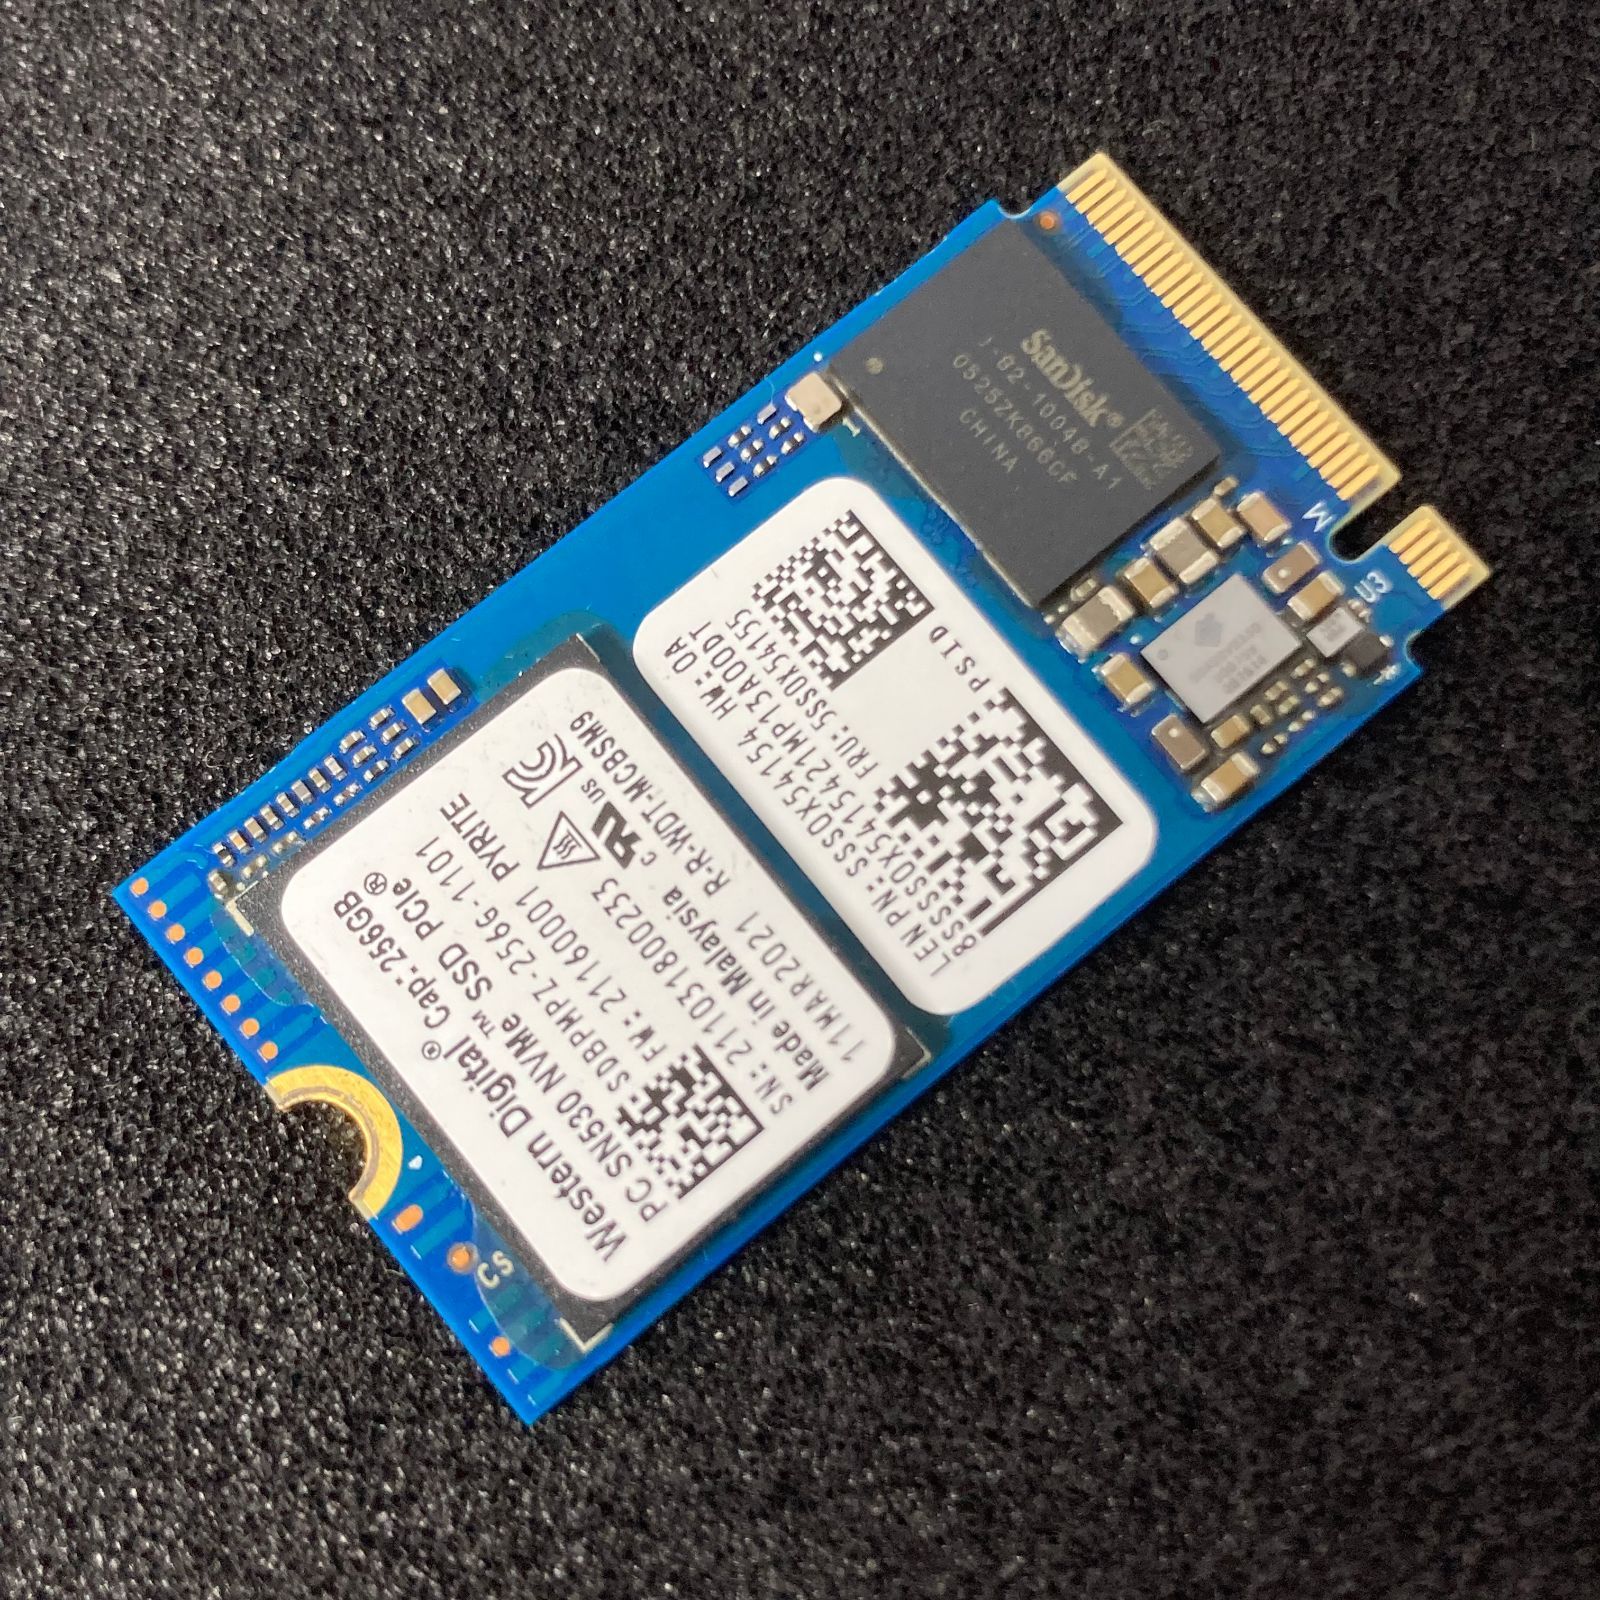 Western Digital M.2 NVMe SSD 2242 | PCIe3.0×4 | 256GB | 98% | y21 |  SN530 | wd nvme【593】